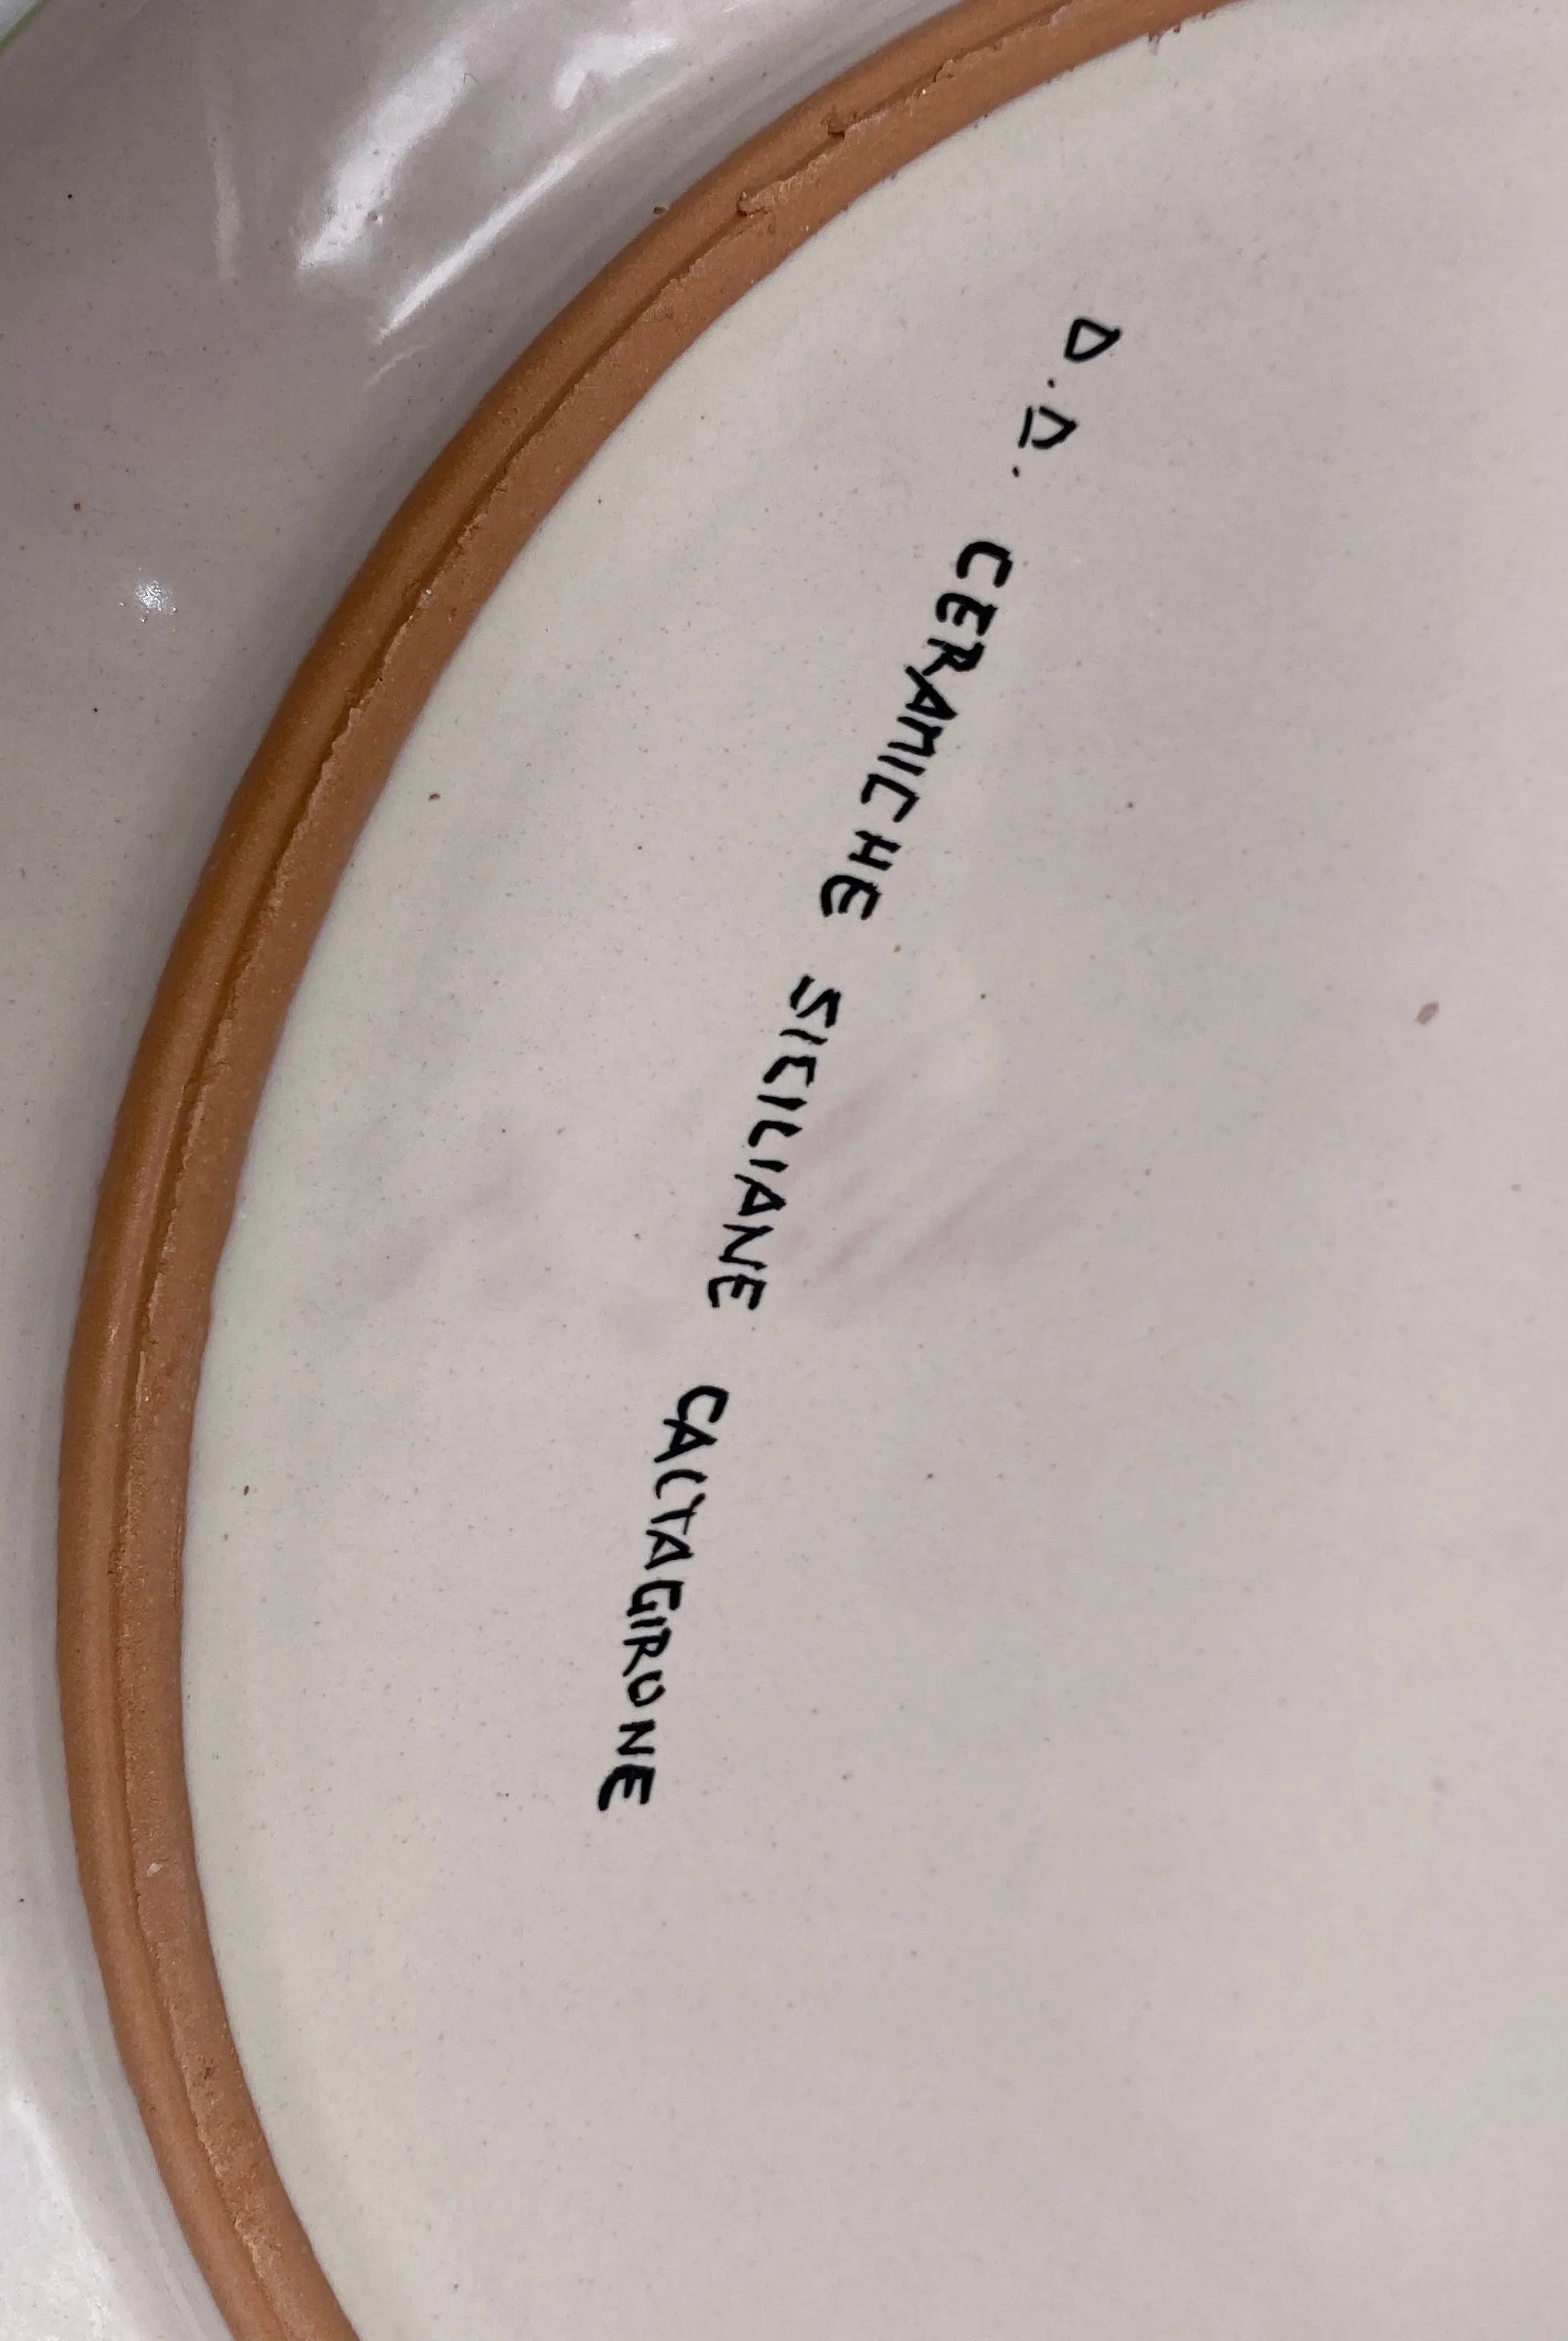 Piatto Decorativo dipinto a mano diametro cm 30 Decoro “Venus” Ocra DD CERAMICHE SICILIANE